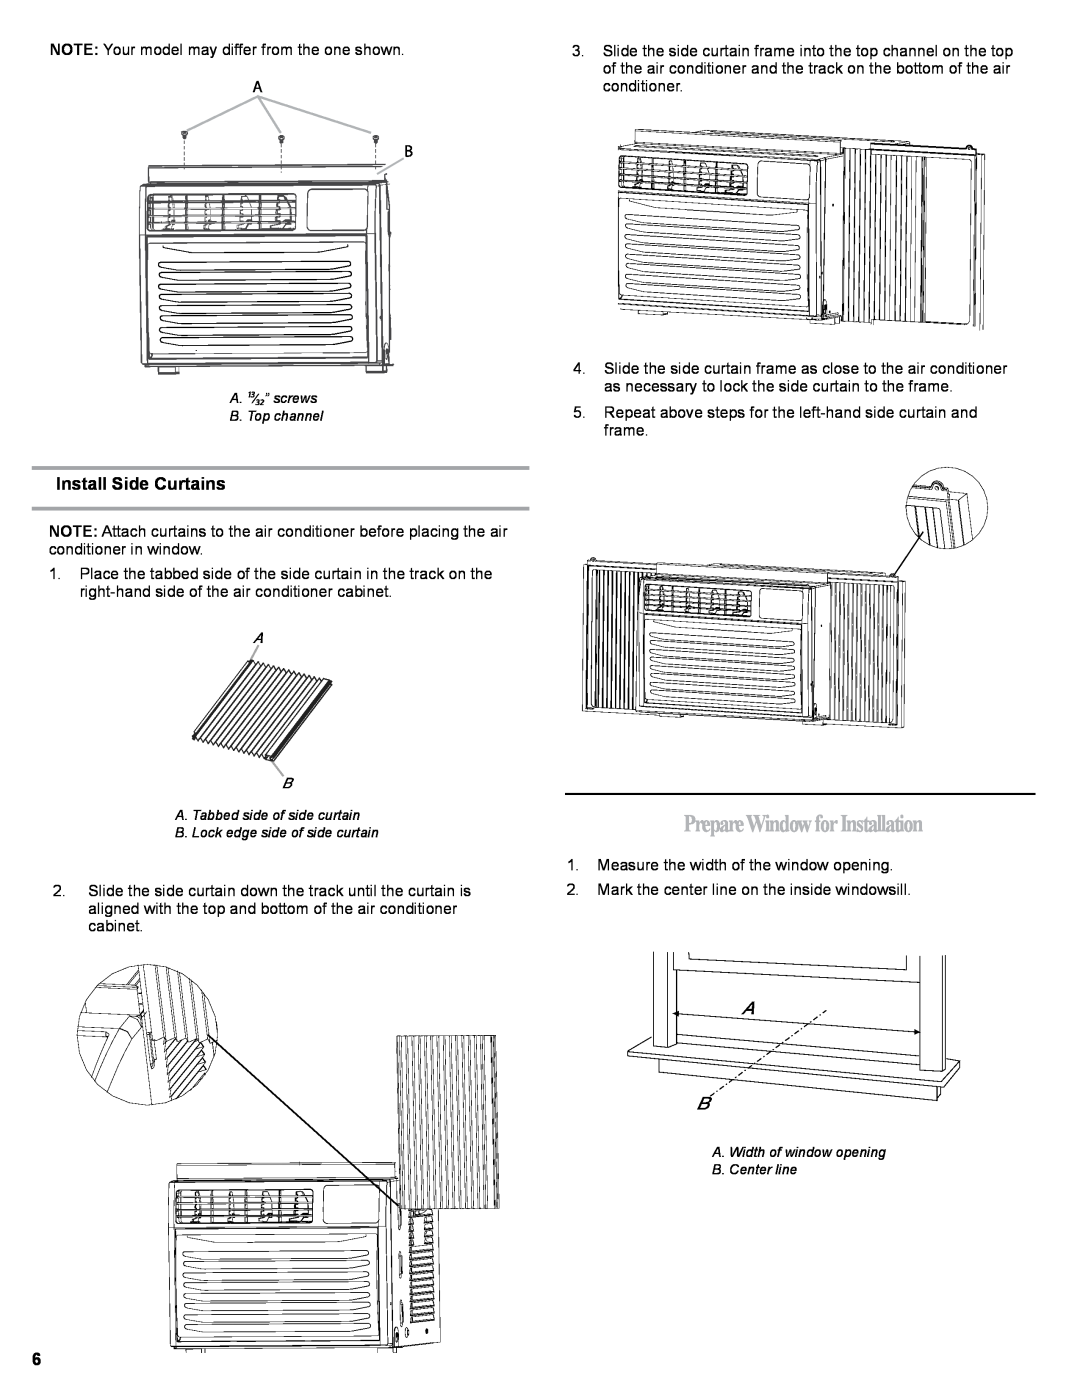 Haier HWR06XCJ, 0010518358 manual PrepareWindowforInstallation, Install Side Curtains 